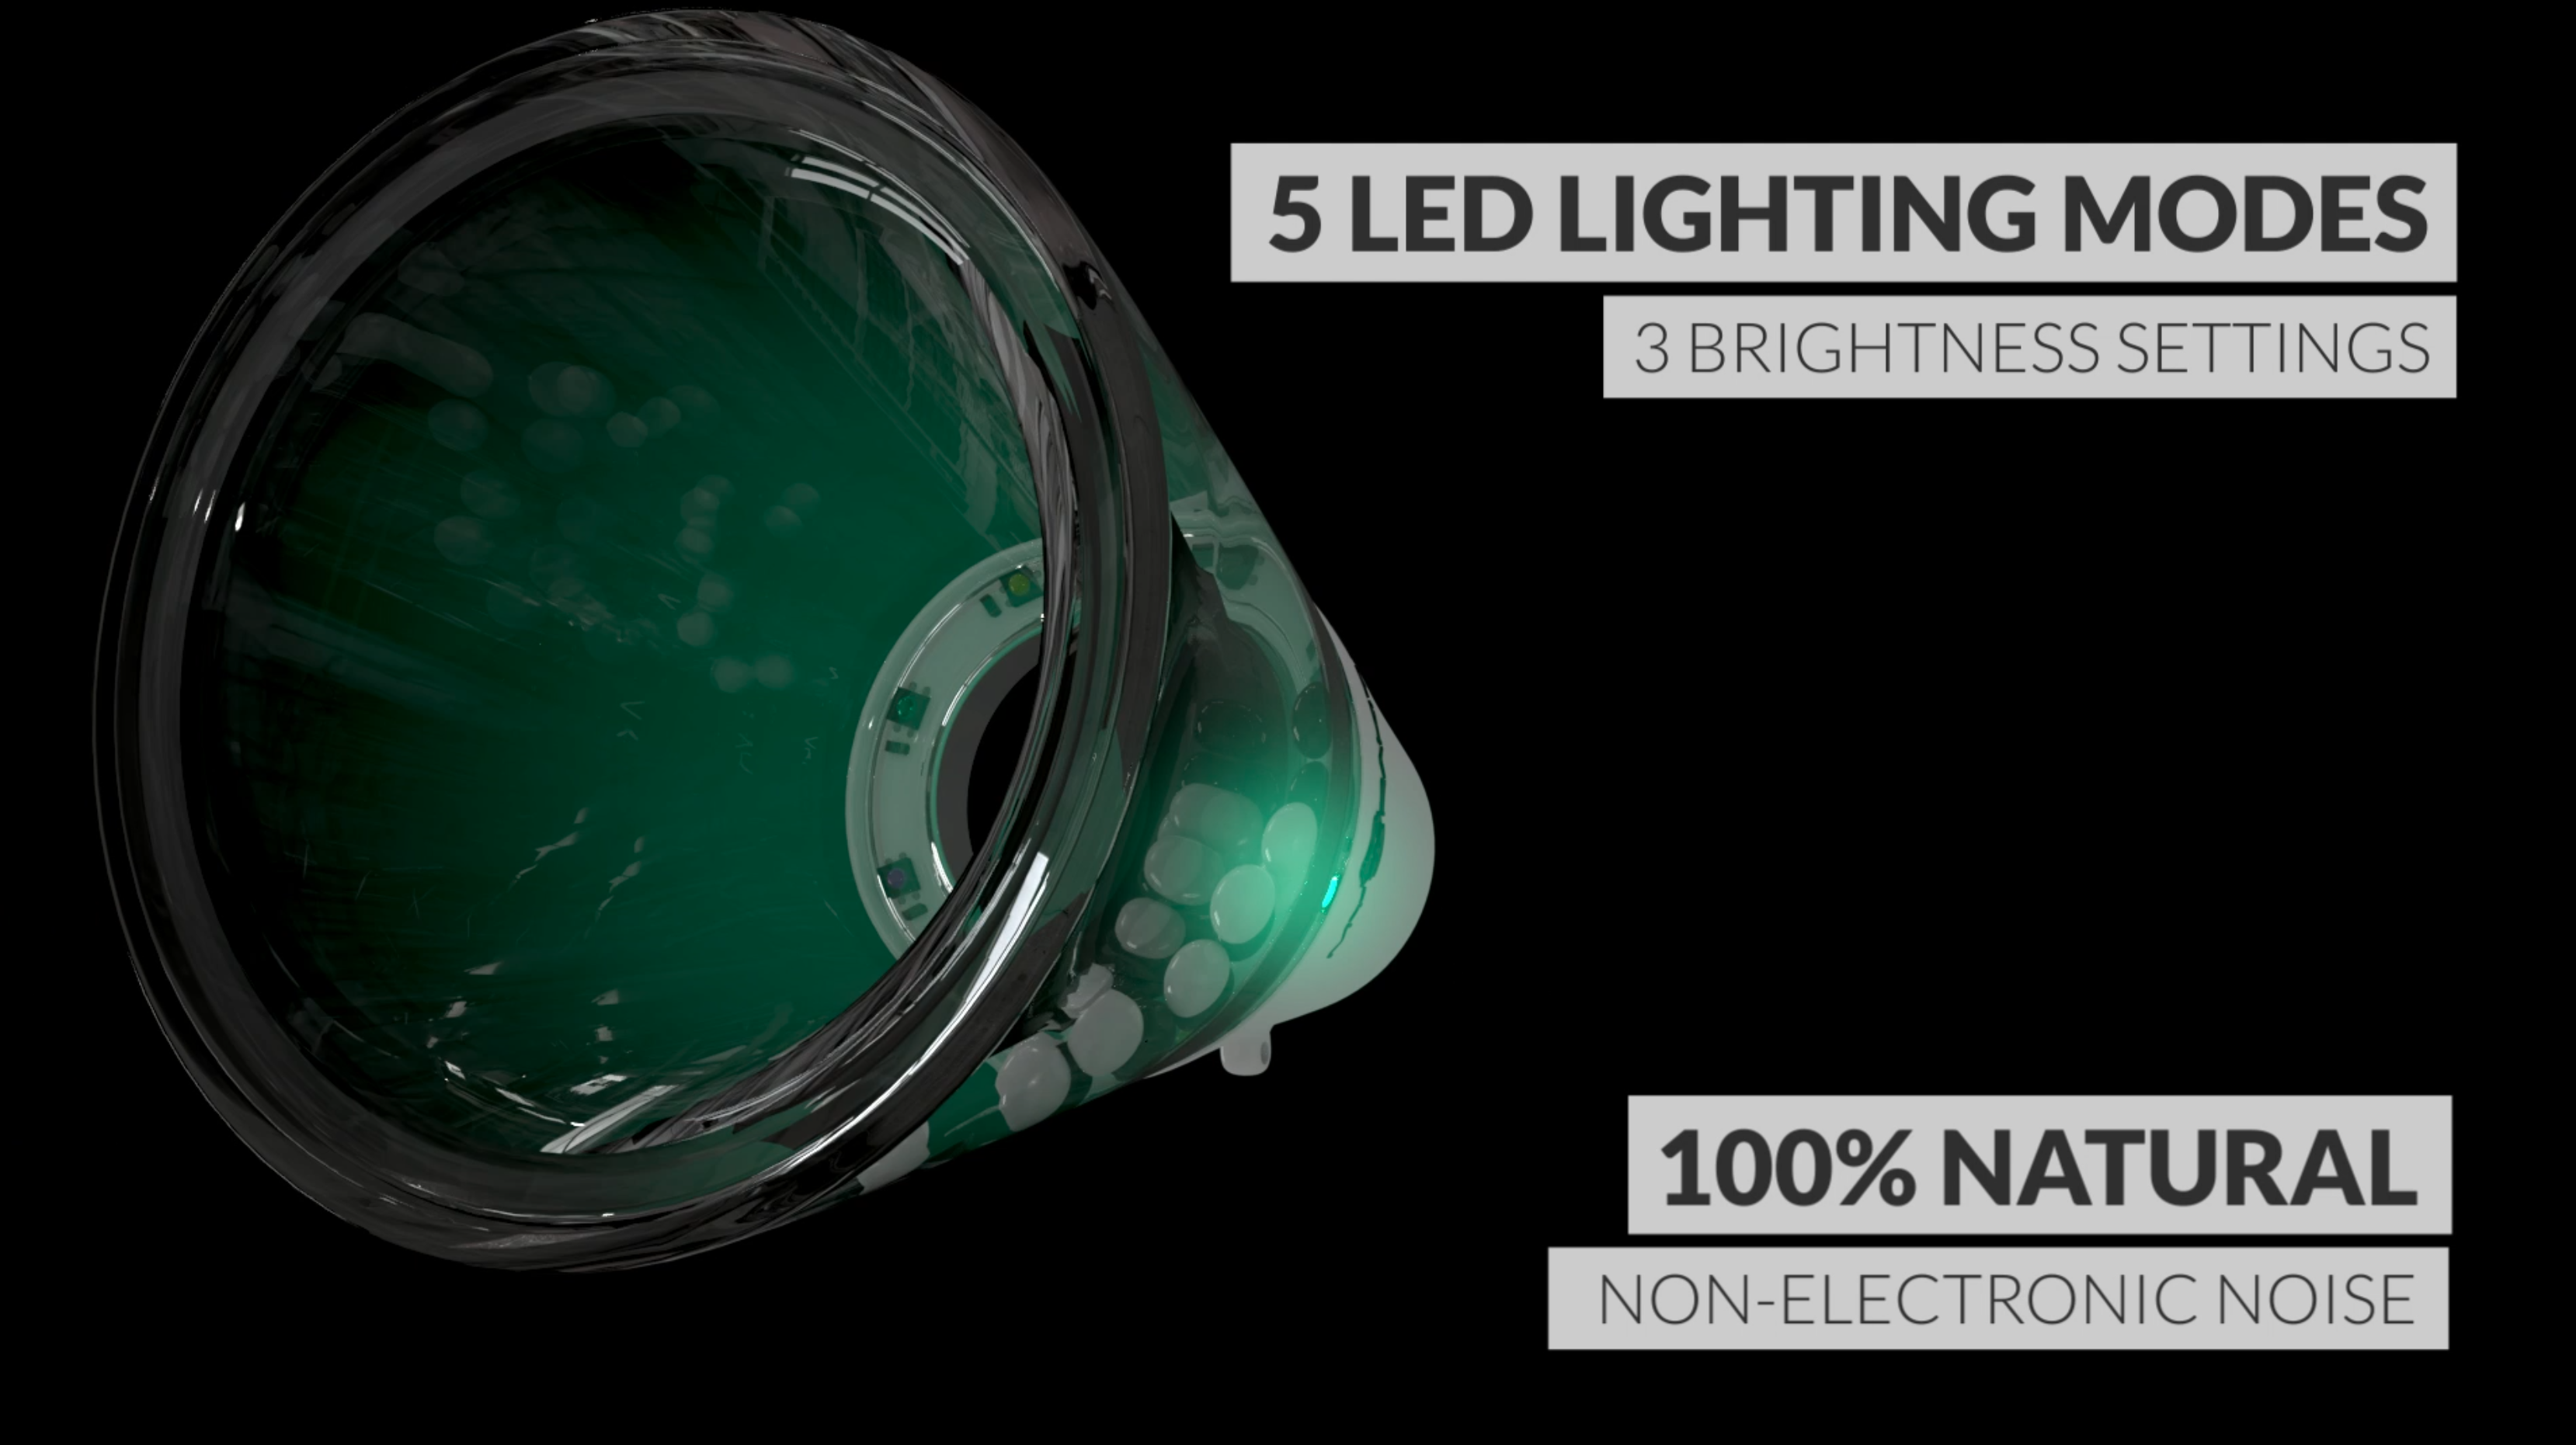 5 LED Lighting Modes, 3 Brightness Settings